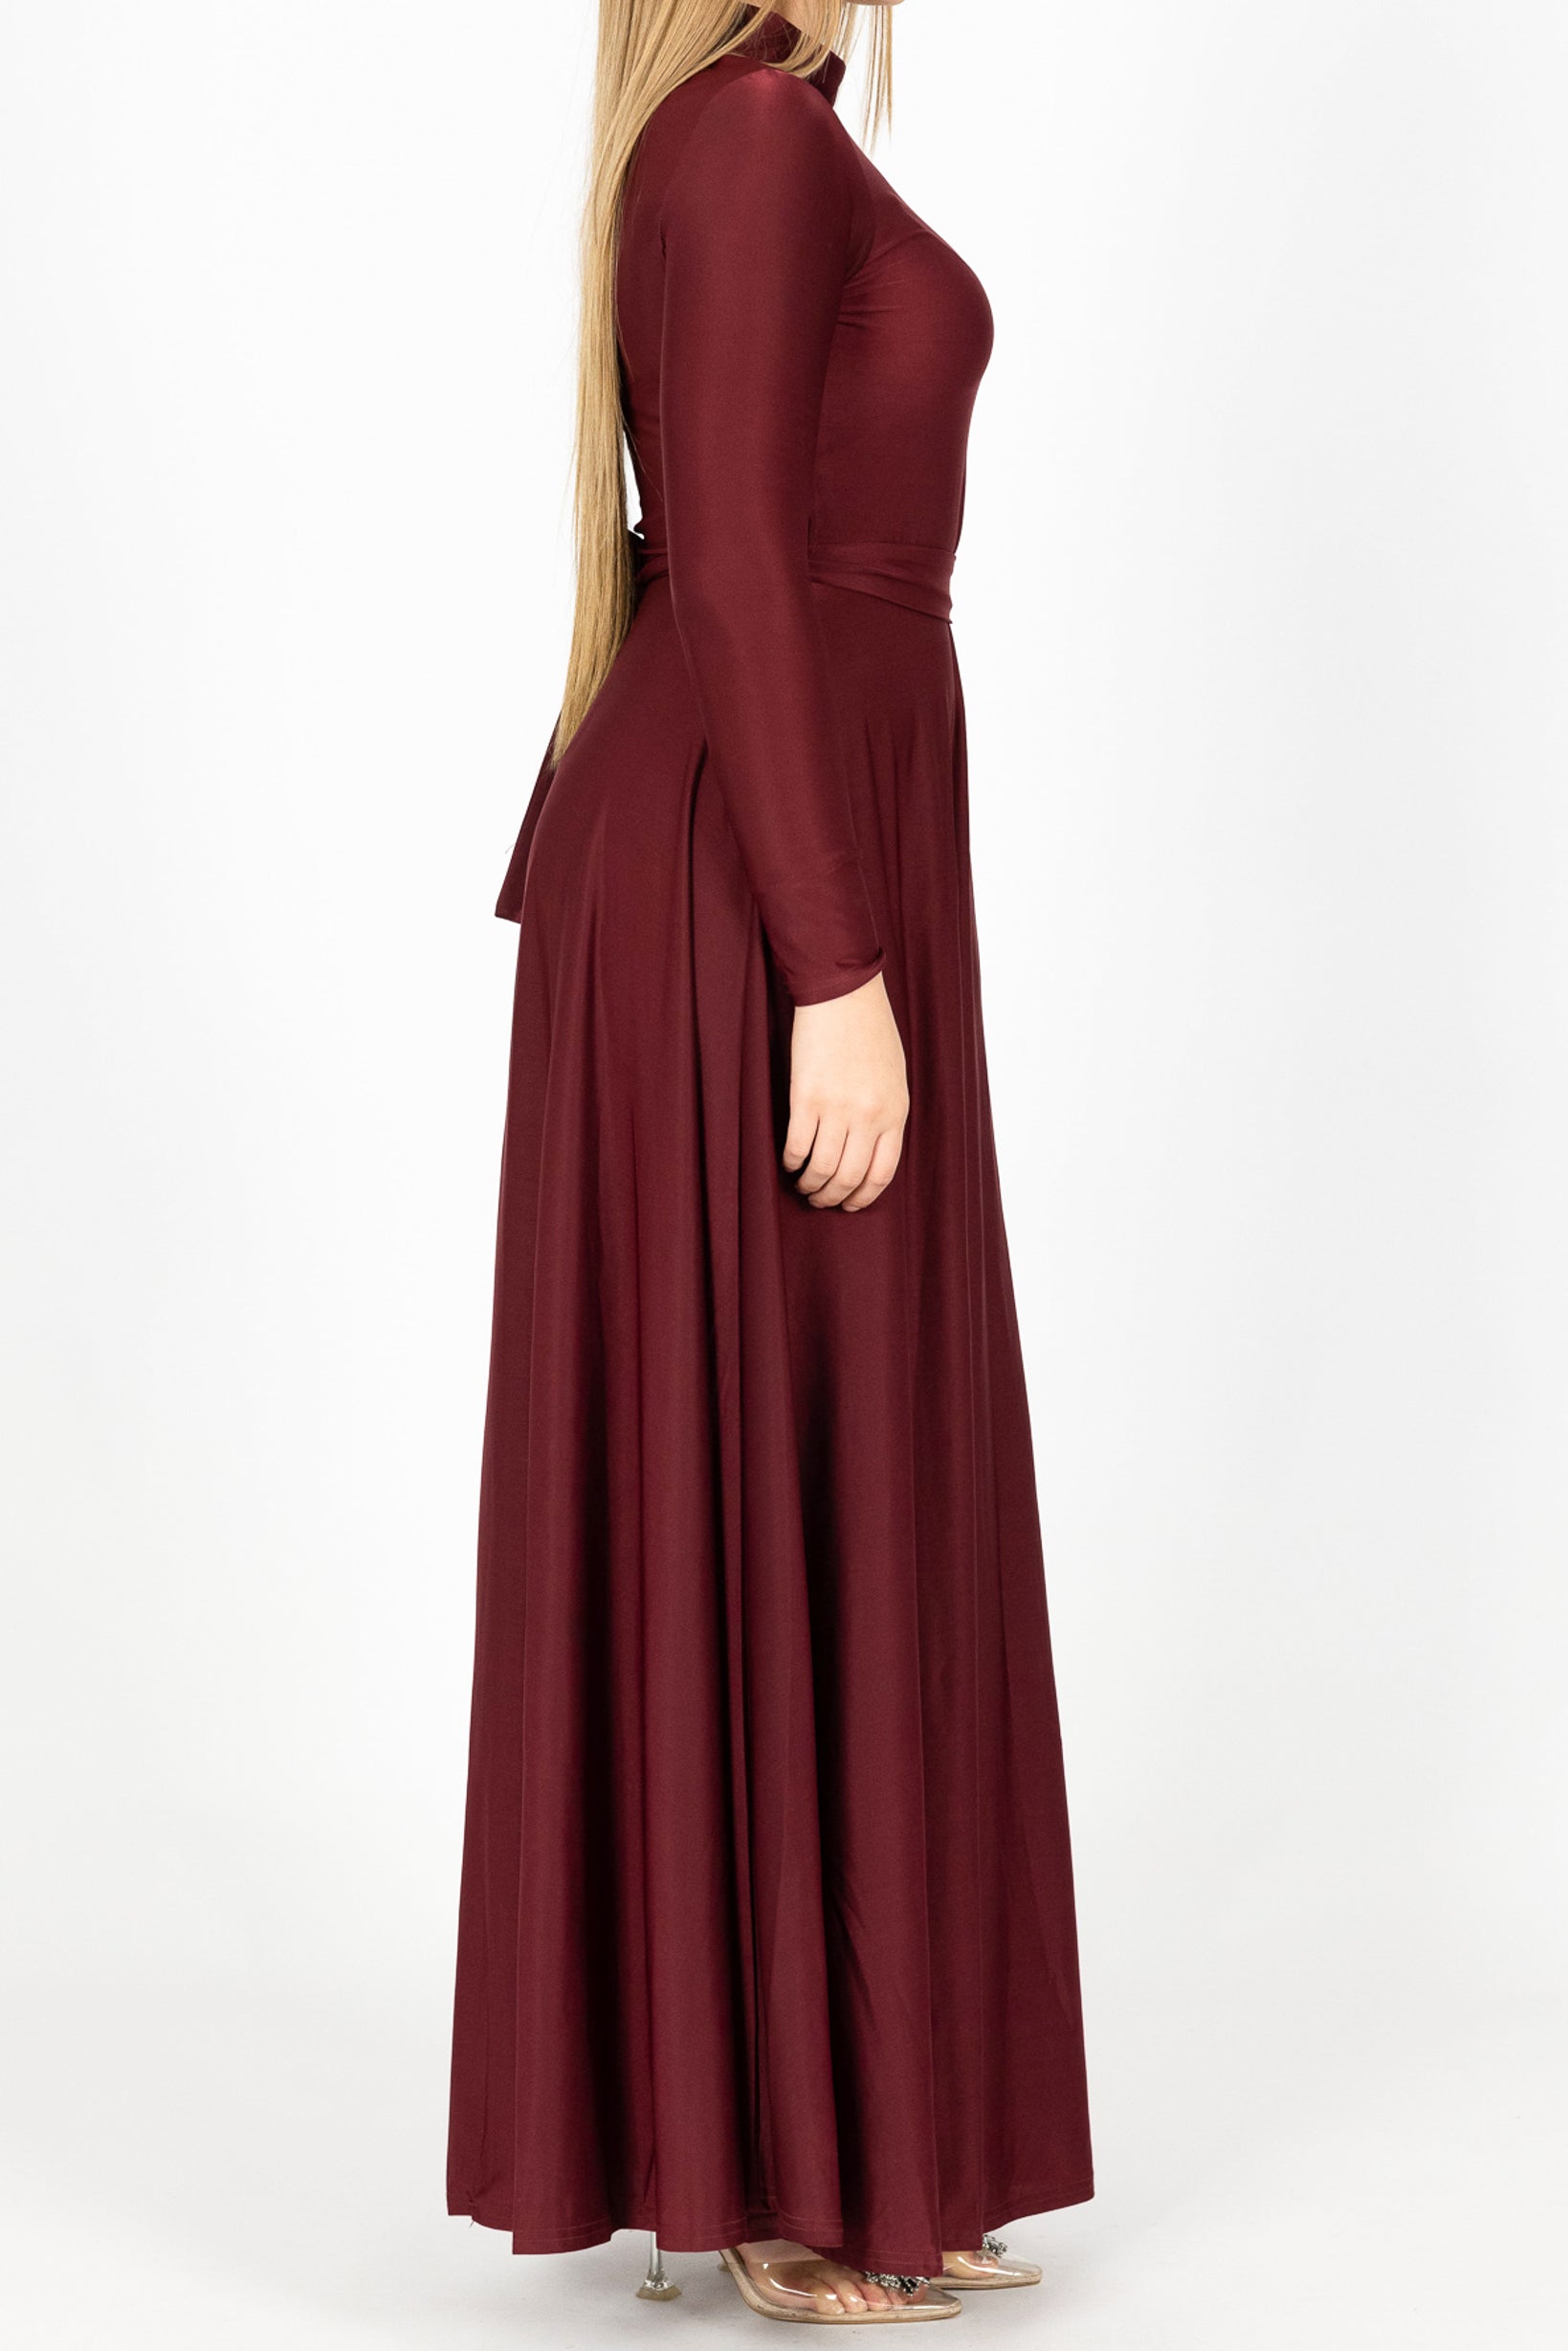 M7877Burgandy-dress-abaya